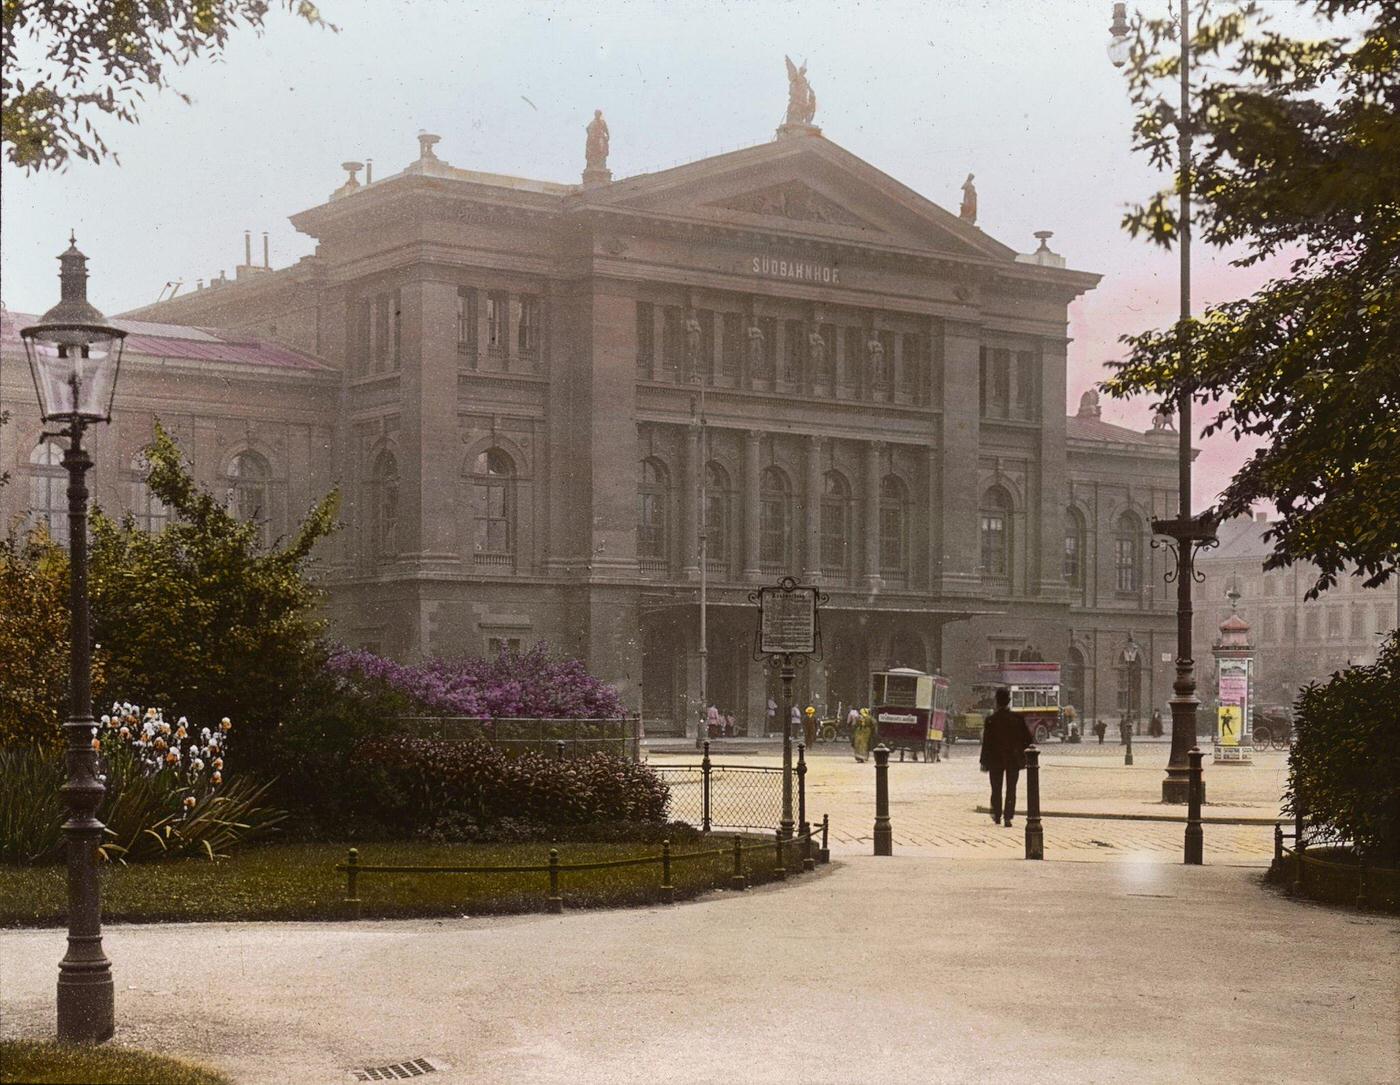 Vienna Suedbahnhof, built in 1874 and destroyed in 1945 during WWII. Vienna's 3rd district, 1905.